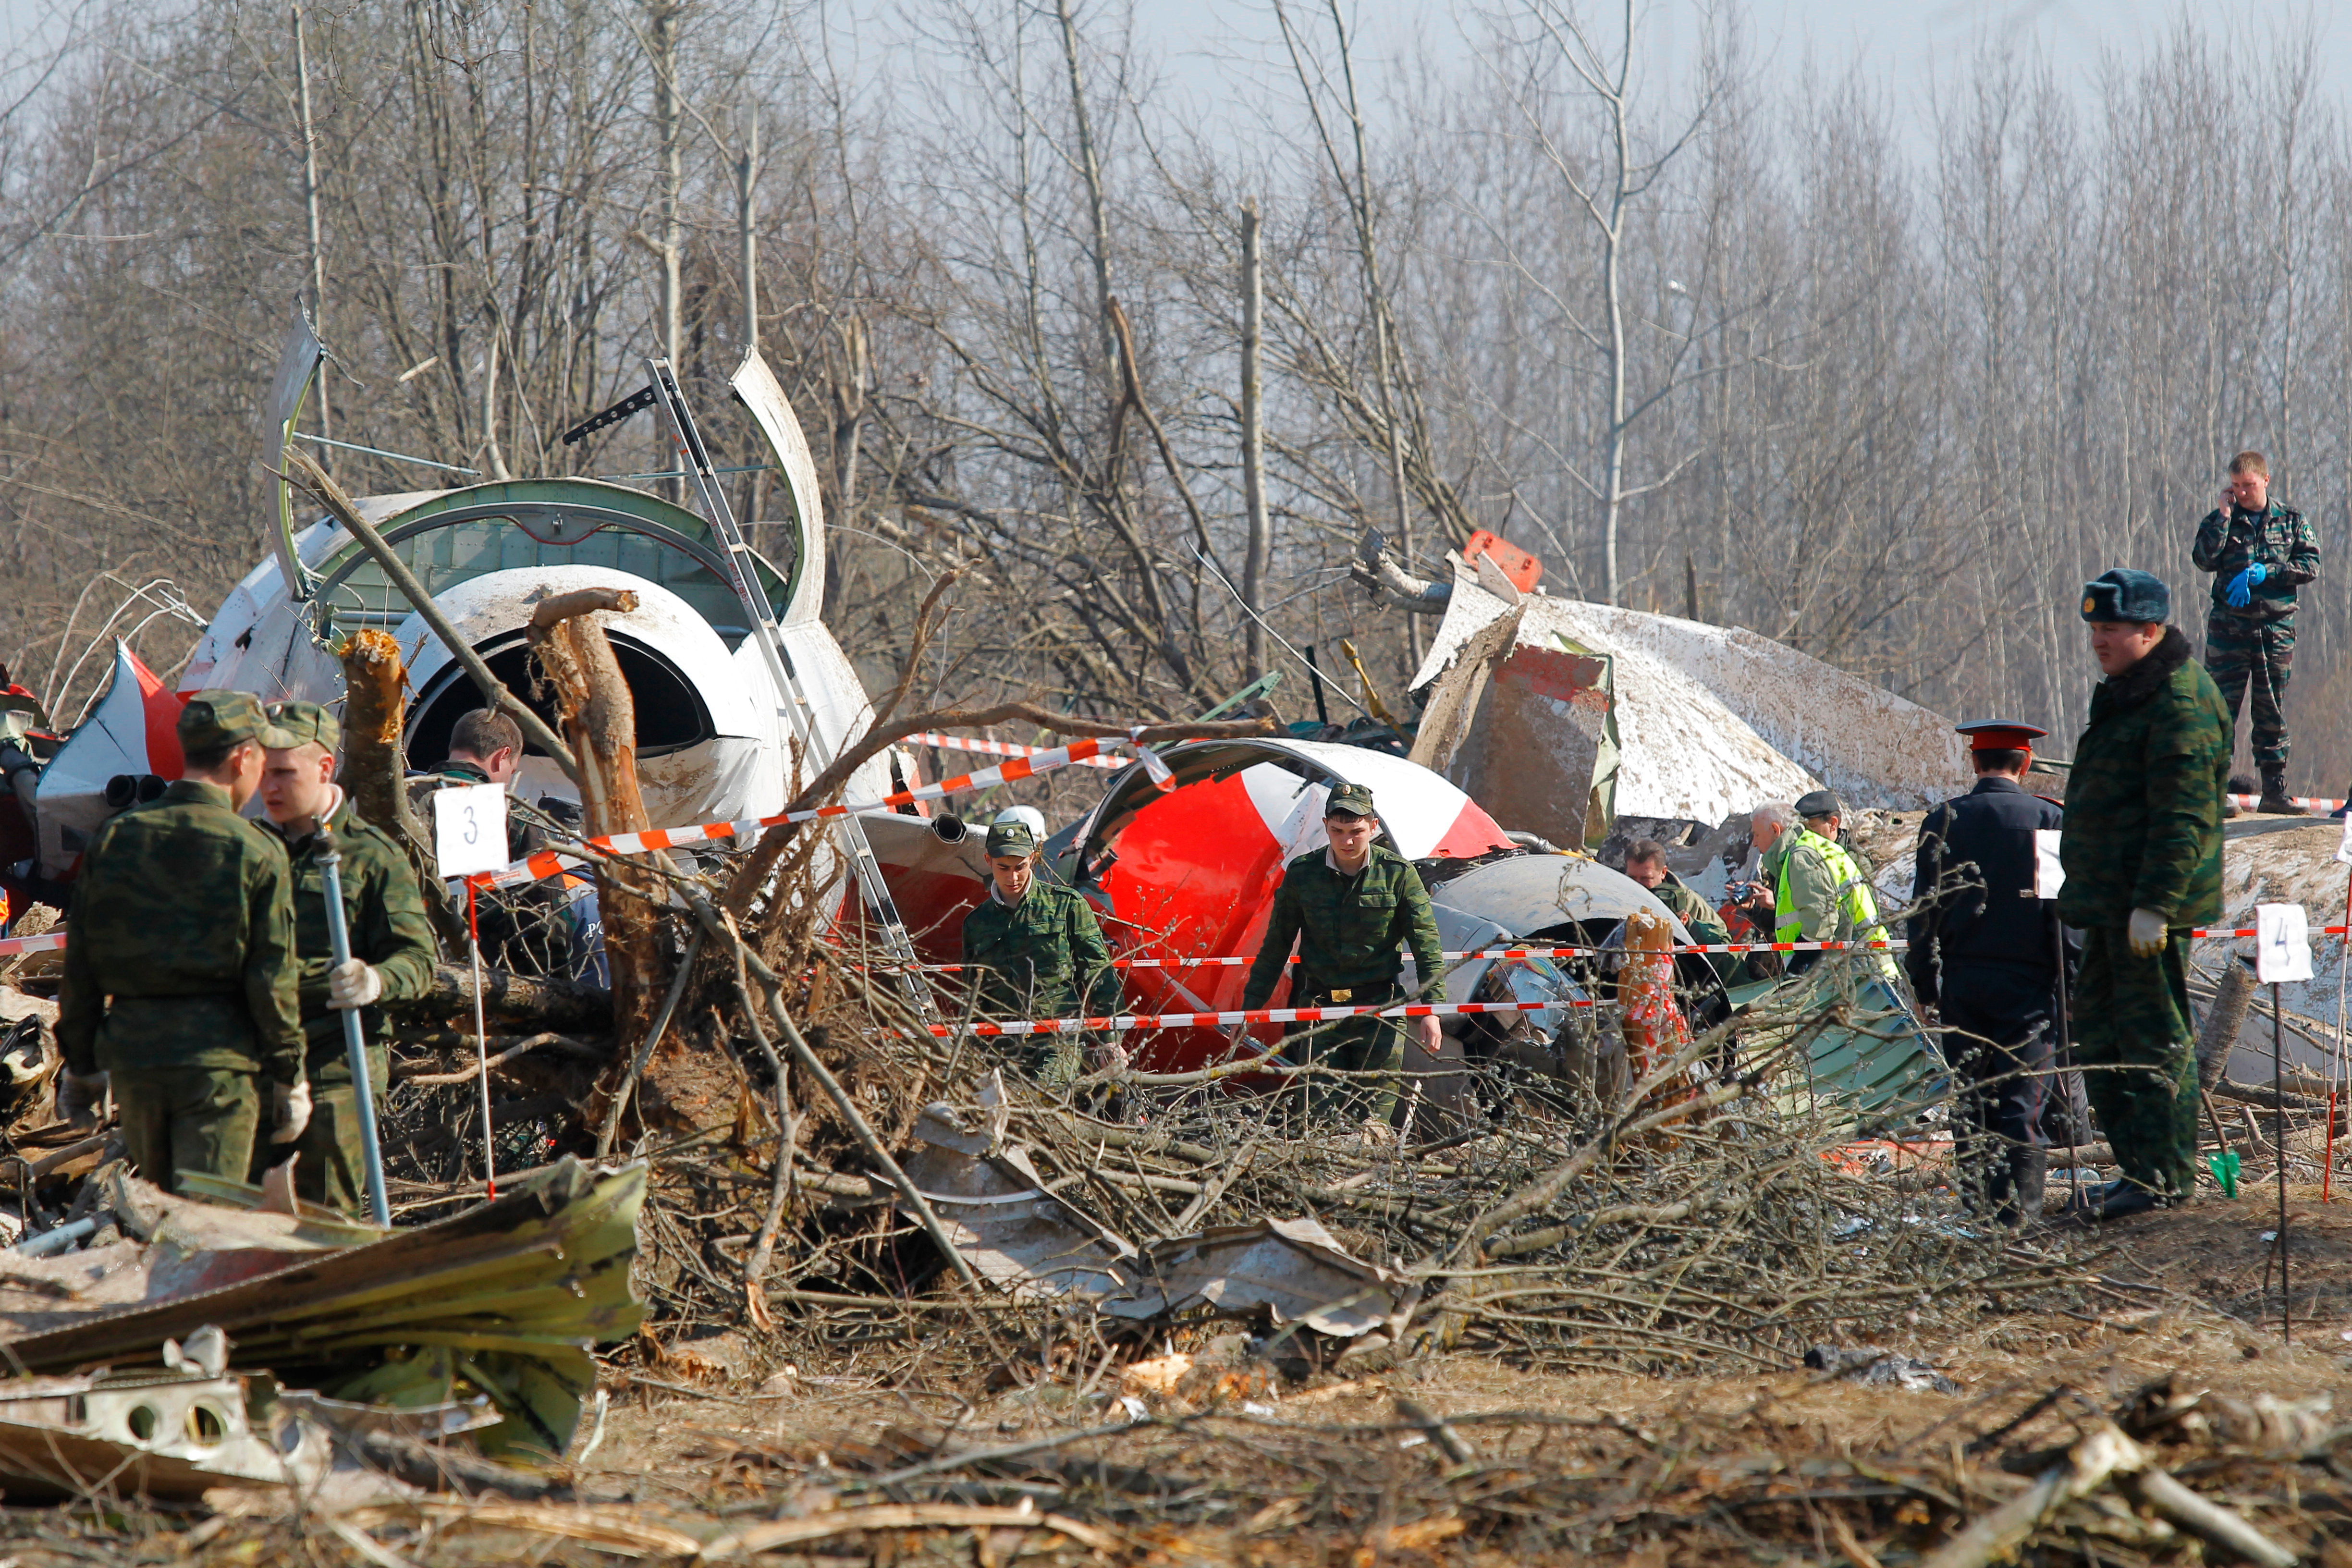 A lengyel elnök merénylet címén kezdeményezett eljárást a szmolenszki légikatasztrófa ügyében